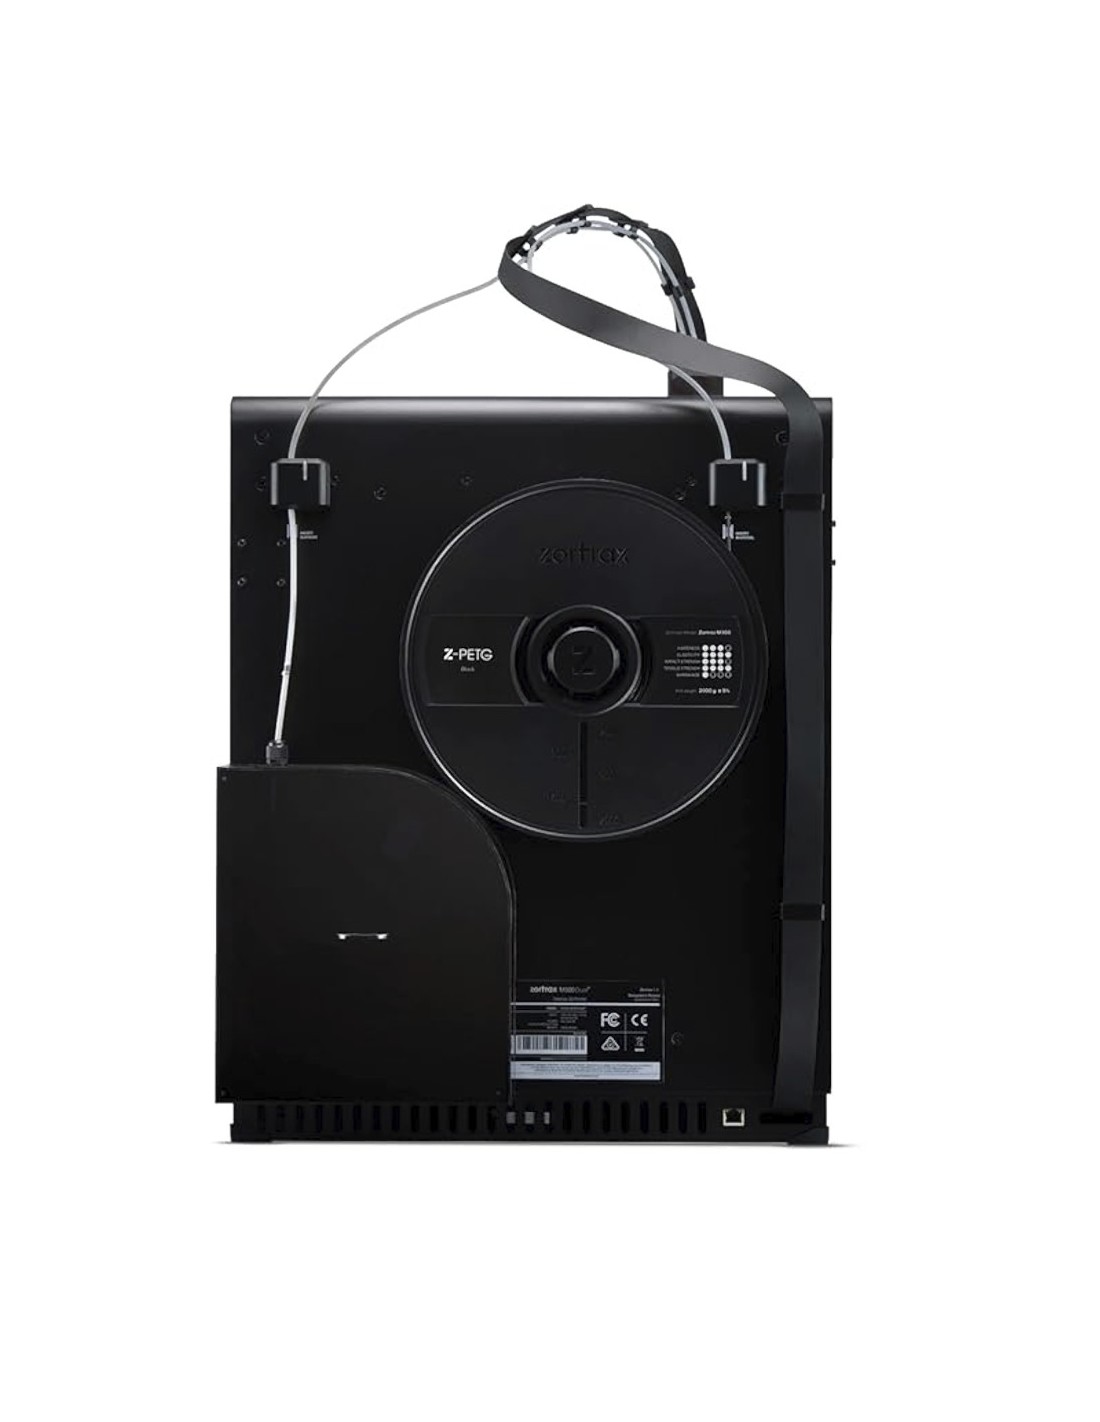 Zortrax M300 Dual - 3D-Drucker